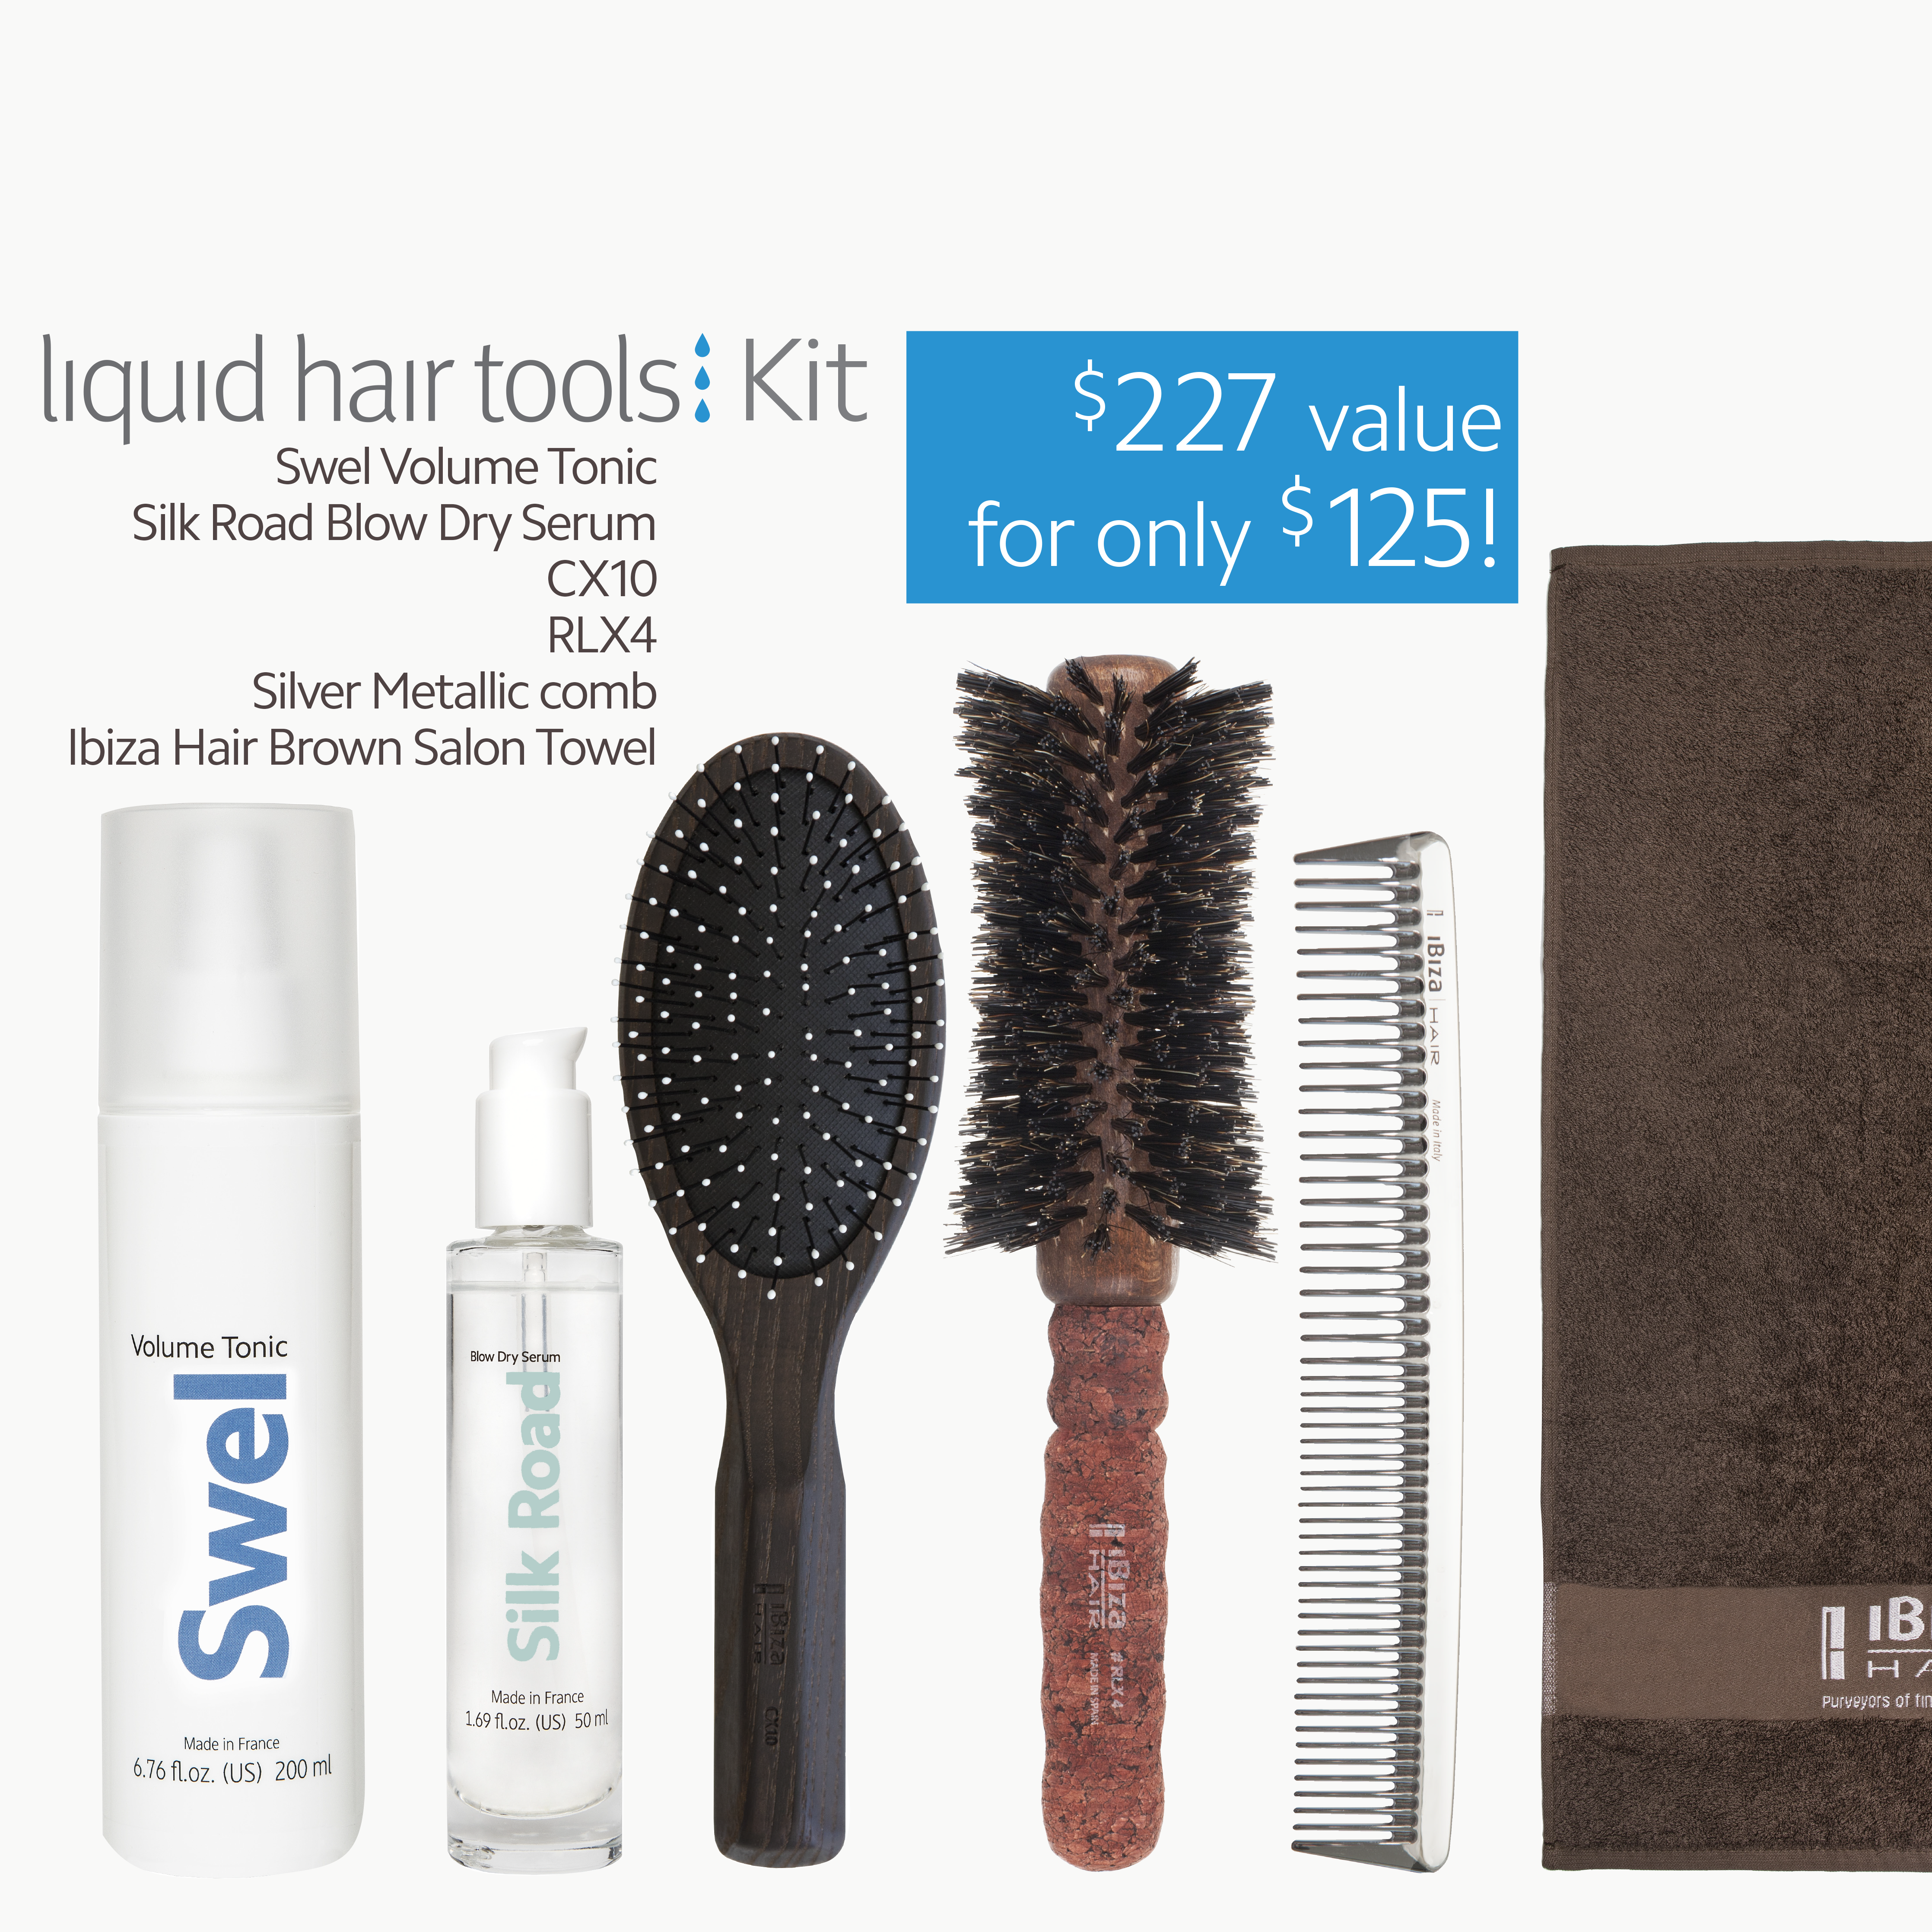 liquid hair tools kit